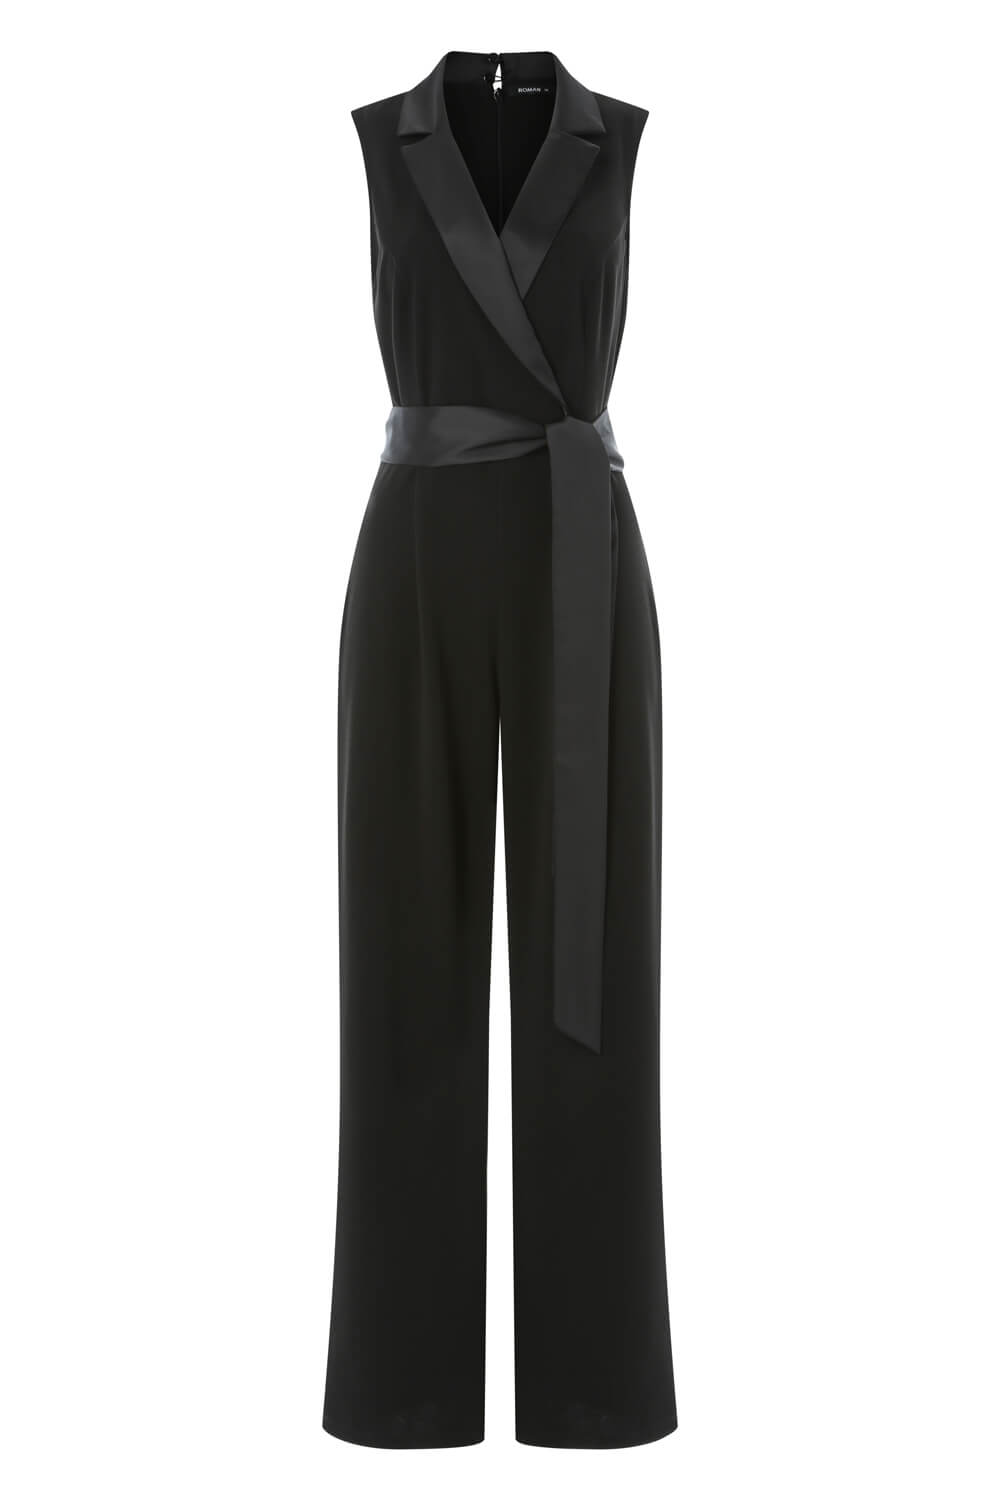 Black Tuxedo Style Jumpsuit, Image 4 of 4